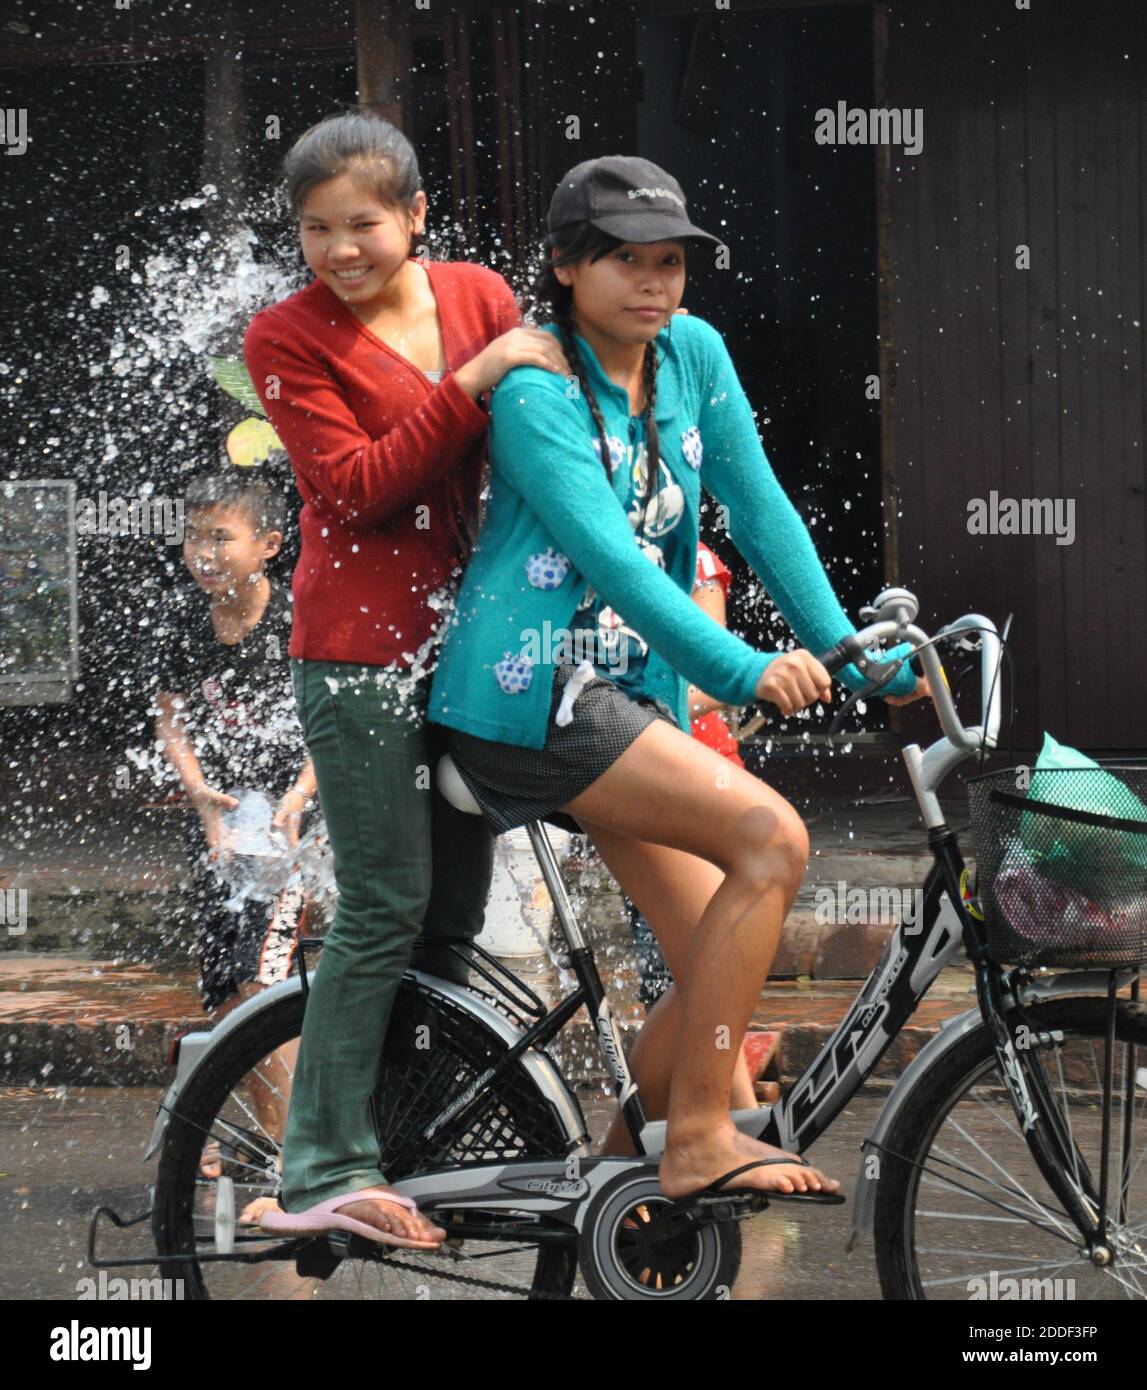 Due ragazze su una bici che sono bagnati dall'acqua mentre passano un ragazzo giovane godendo il festival di lancio dell'acqua di Songkran. Foto Stock